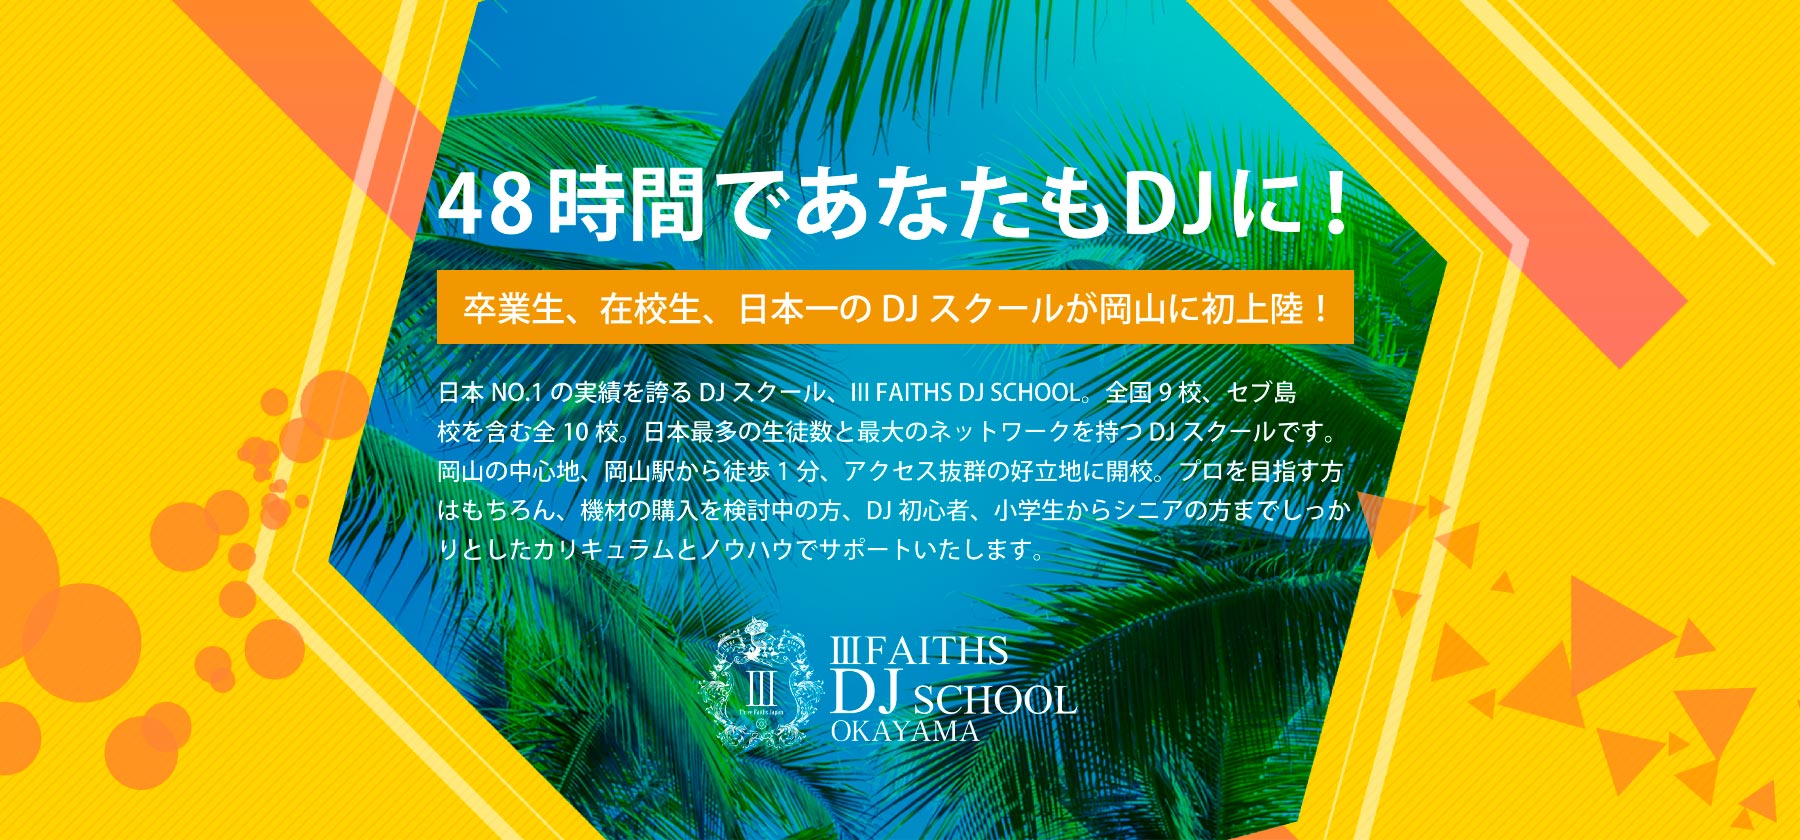 48時間であなたもDJに！卒業生、在校生、日本一のDJスクールが岡山に初上陸！日本NO.1の実績を誇るDJスクール、Ⅲ FAITHS DJ SCHOOL。全国9校、セブ島校を含む全10校。日本最多の生徒数と最大のネットワークを持つDJスクールです。岡山の中心地、岡山駅から徒歩1分、アクセス抜群の好立地に開校。プロを目指す方はもちろん、機材の購入を検討中の方、DJ初心者、小学生からシニアの方までしっかりとしたカリキュラムとノウハウでサポートいたします。